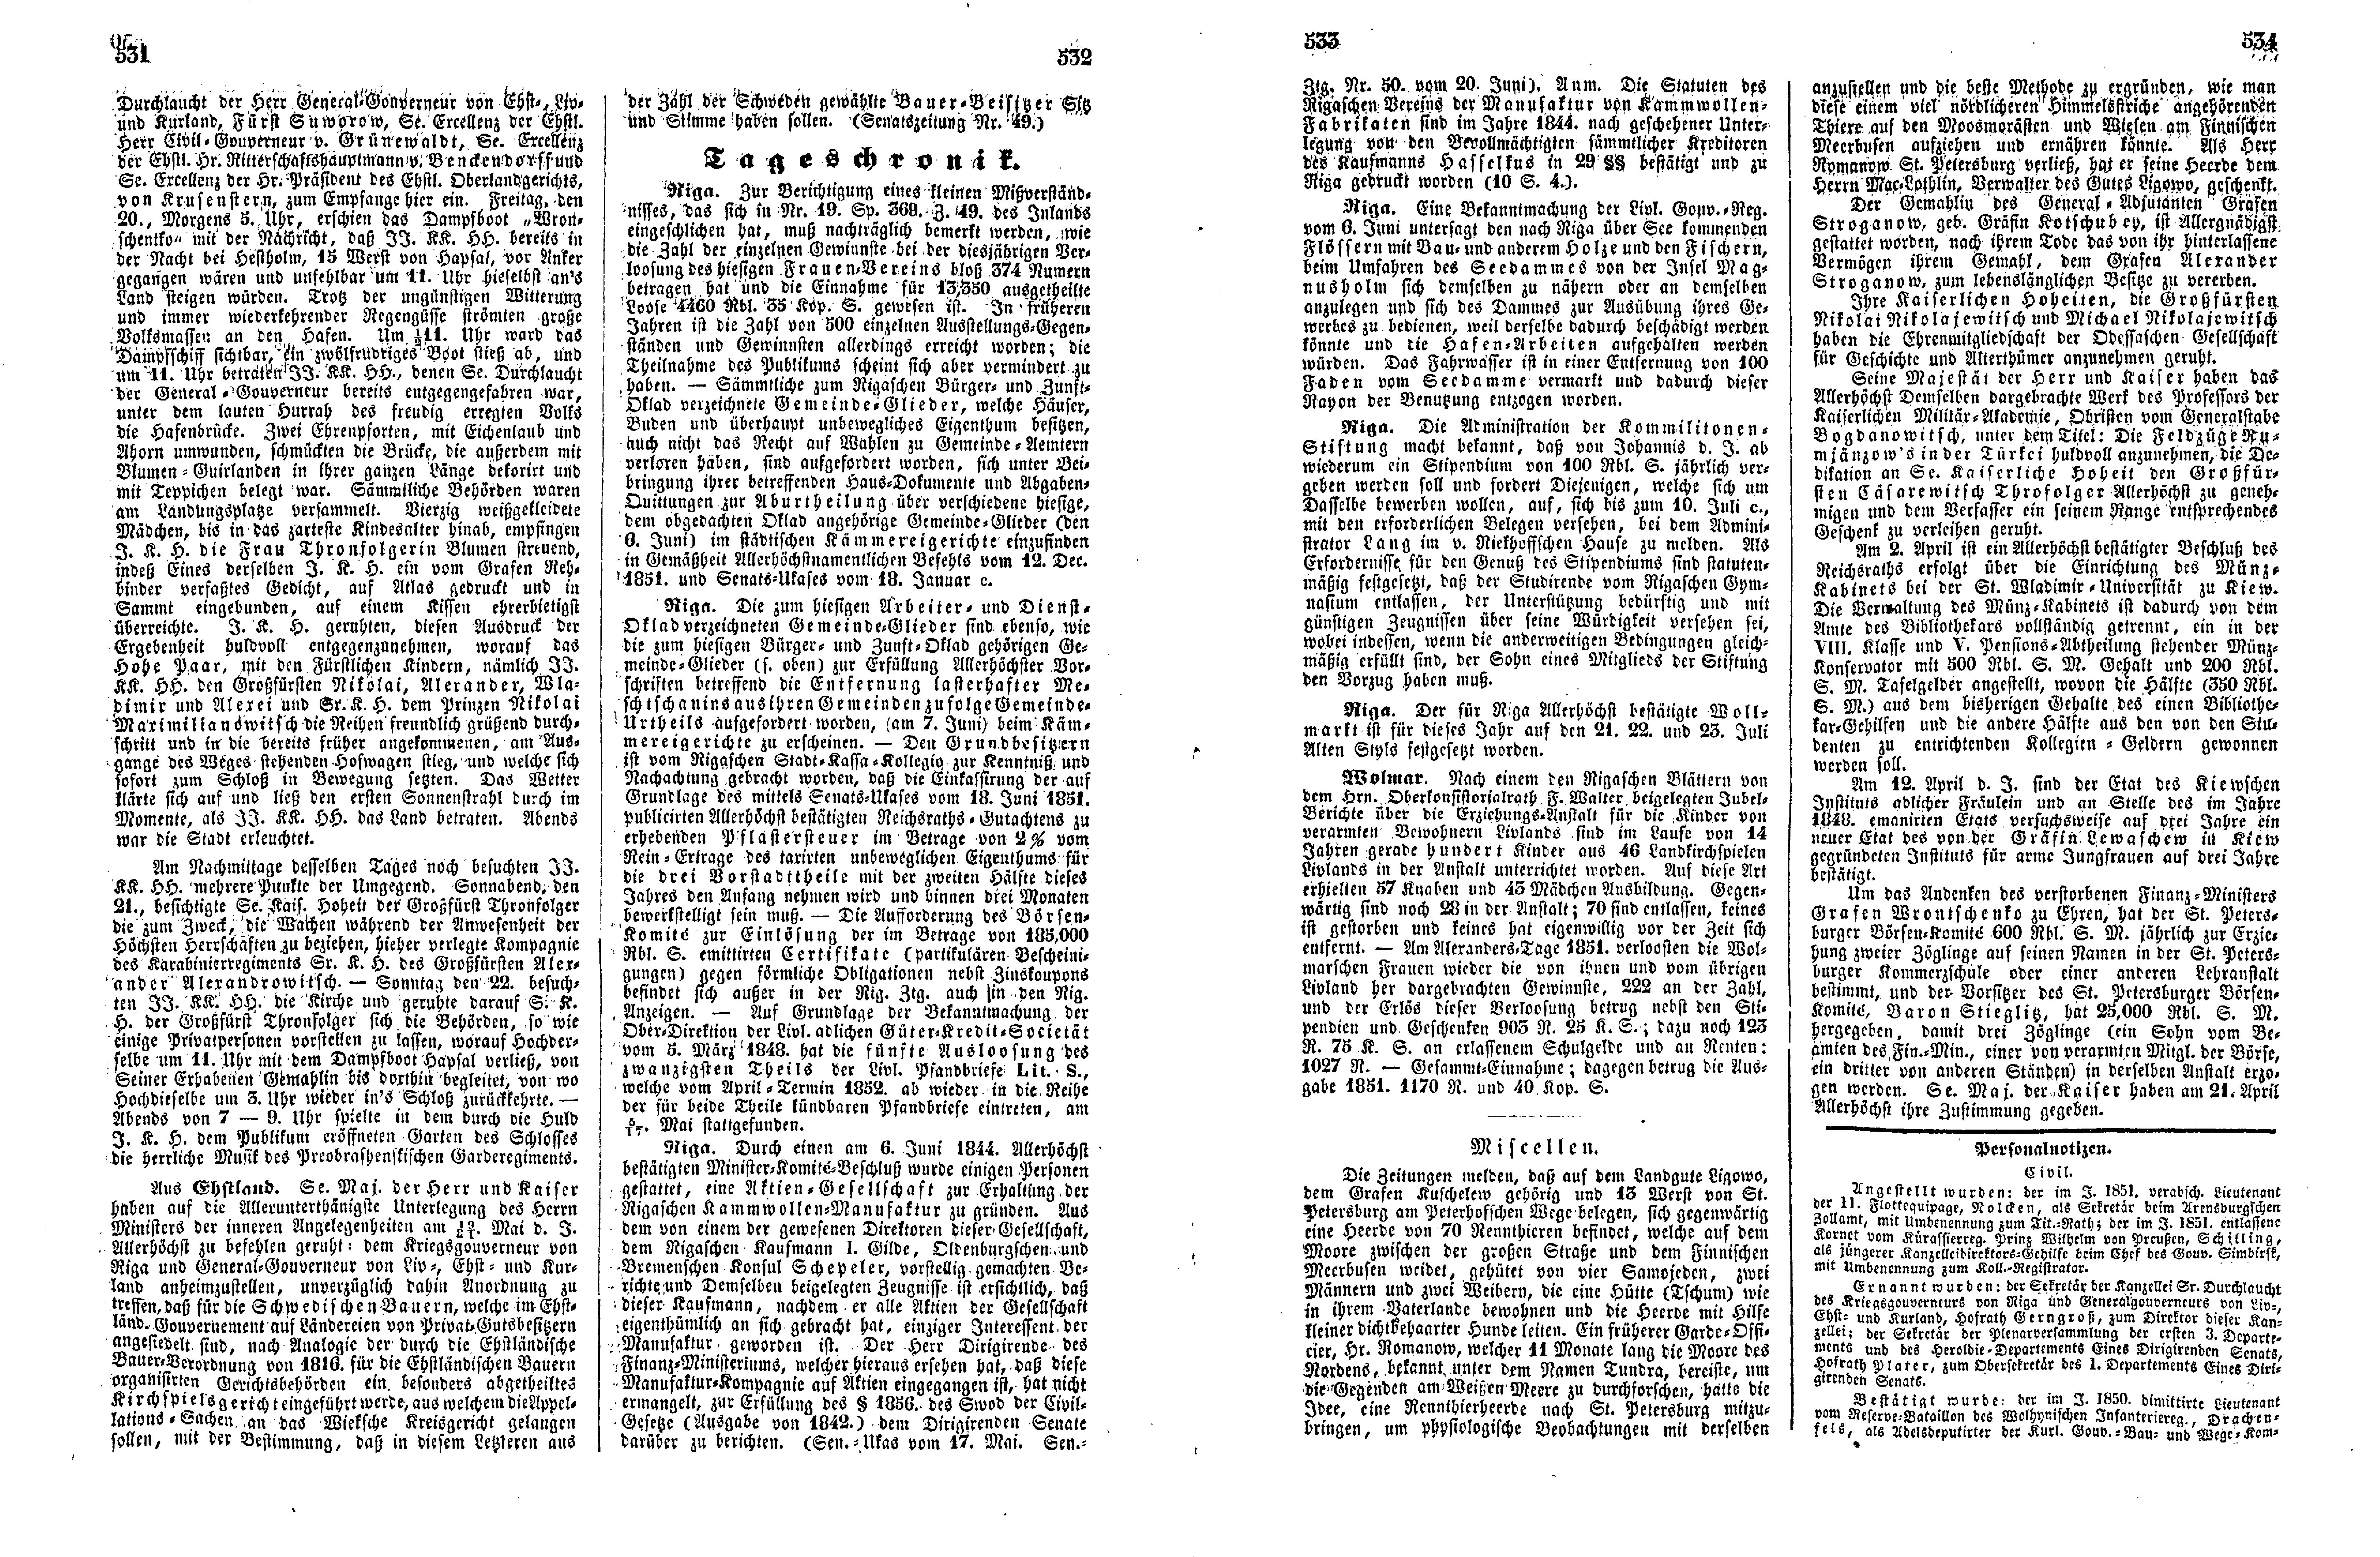 Das Inland [17] (1852) | 138. (531-534) Haupttext